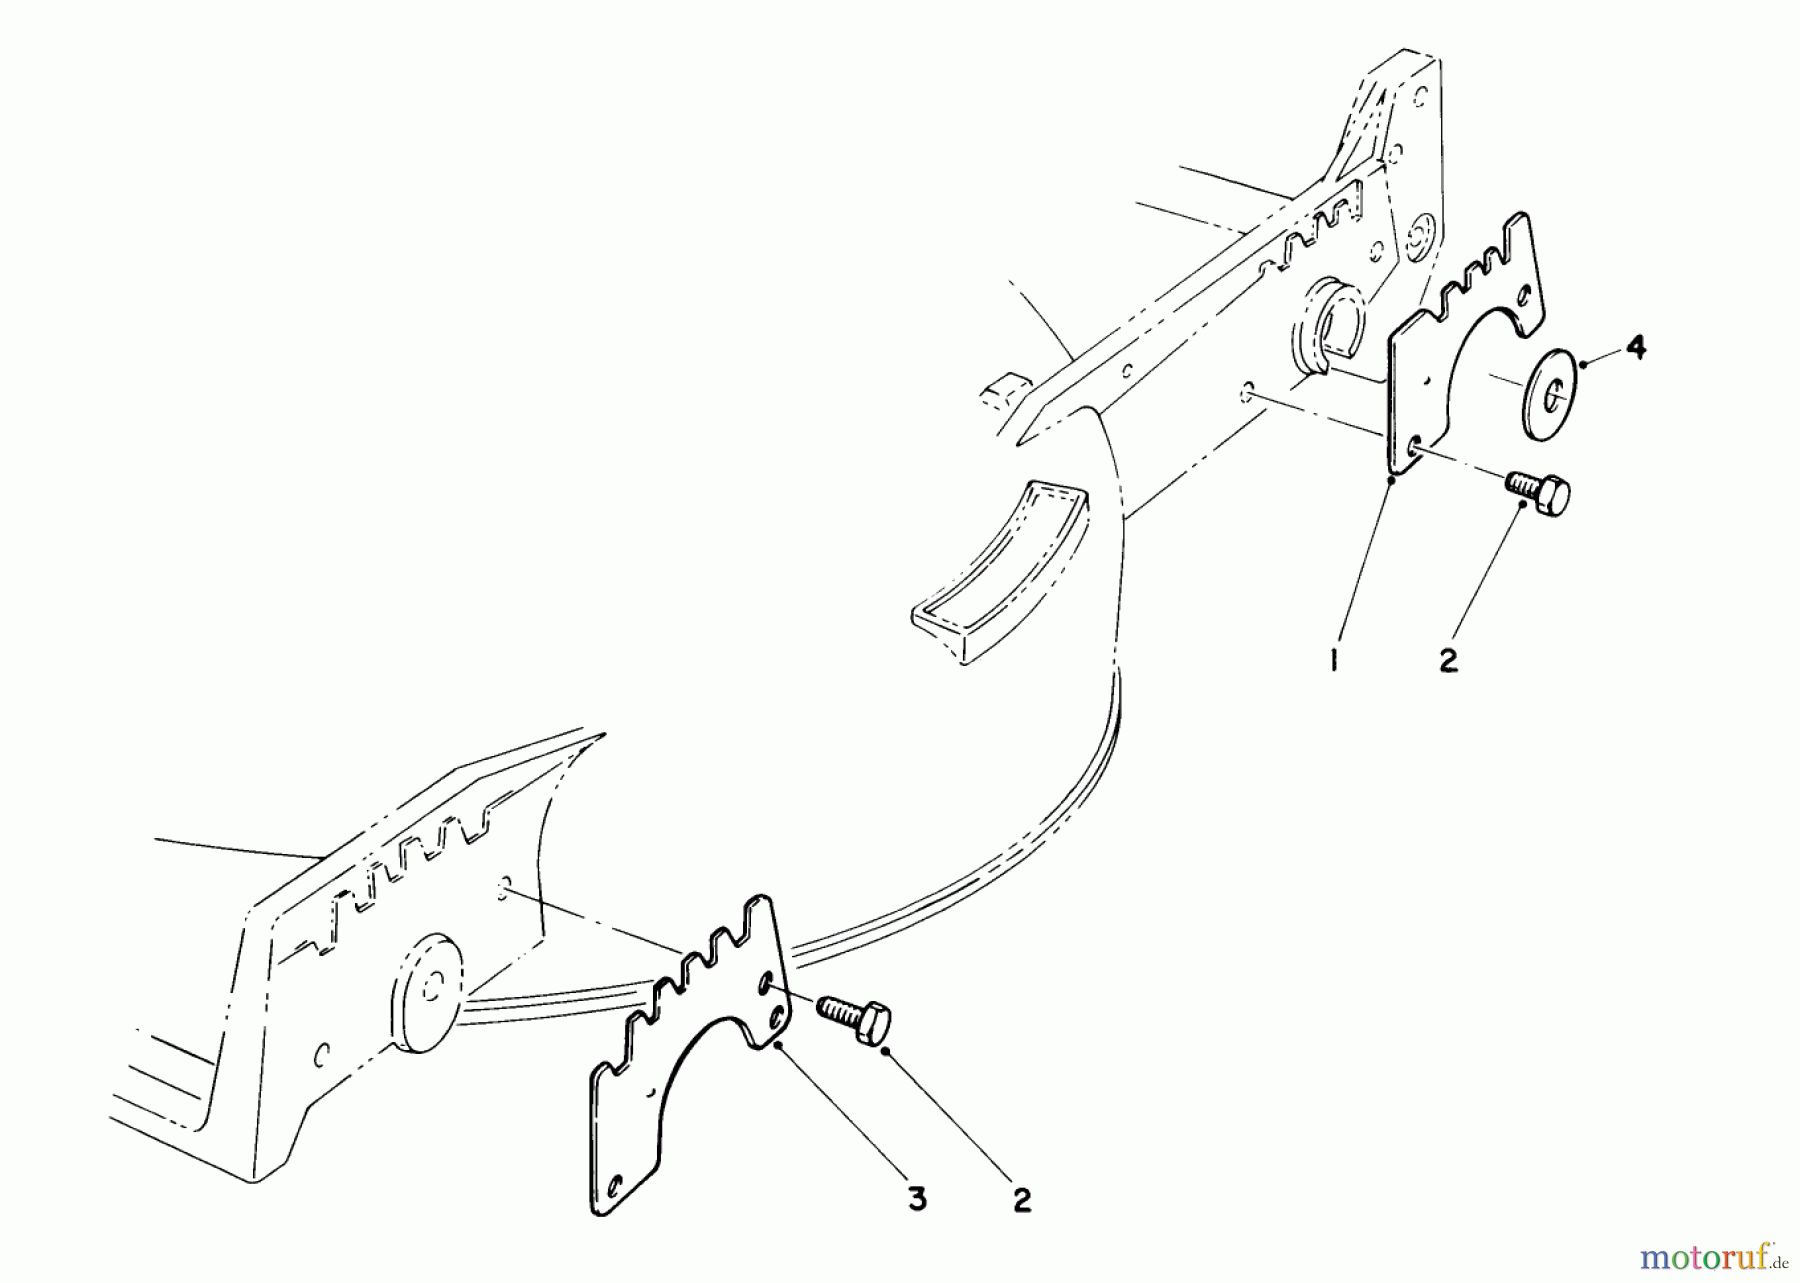  Toro Neu Mowers, Walk-Behind Seite 1 20584 - Toro Lawnmower, 1987 (7000001-7999999) WEAR PLATE KIT NO. 49-4080 (OPTIONAL)